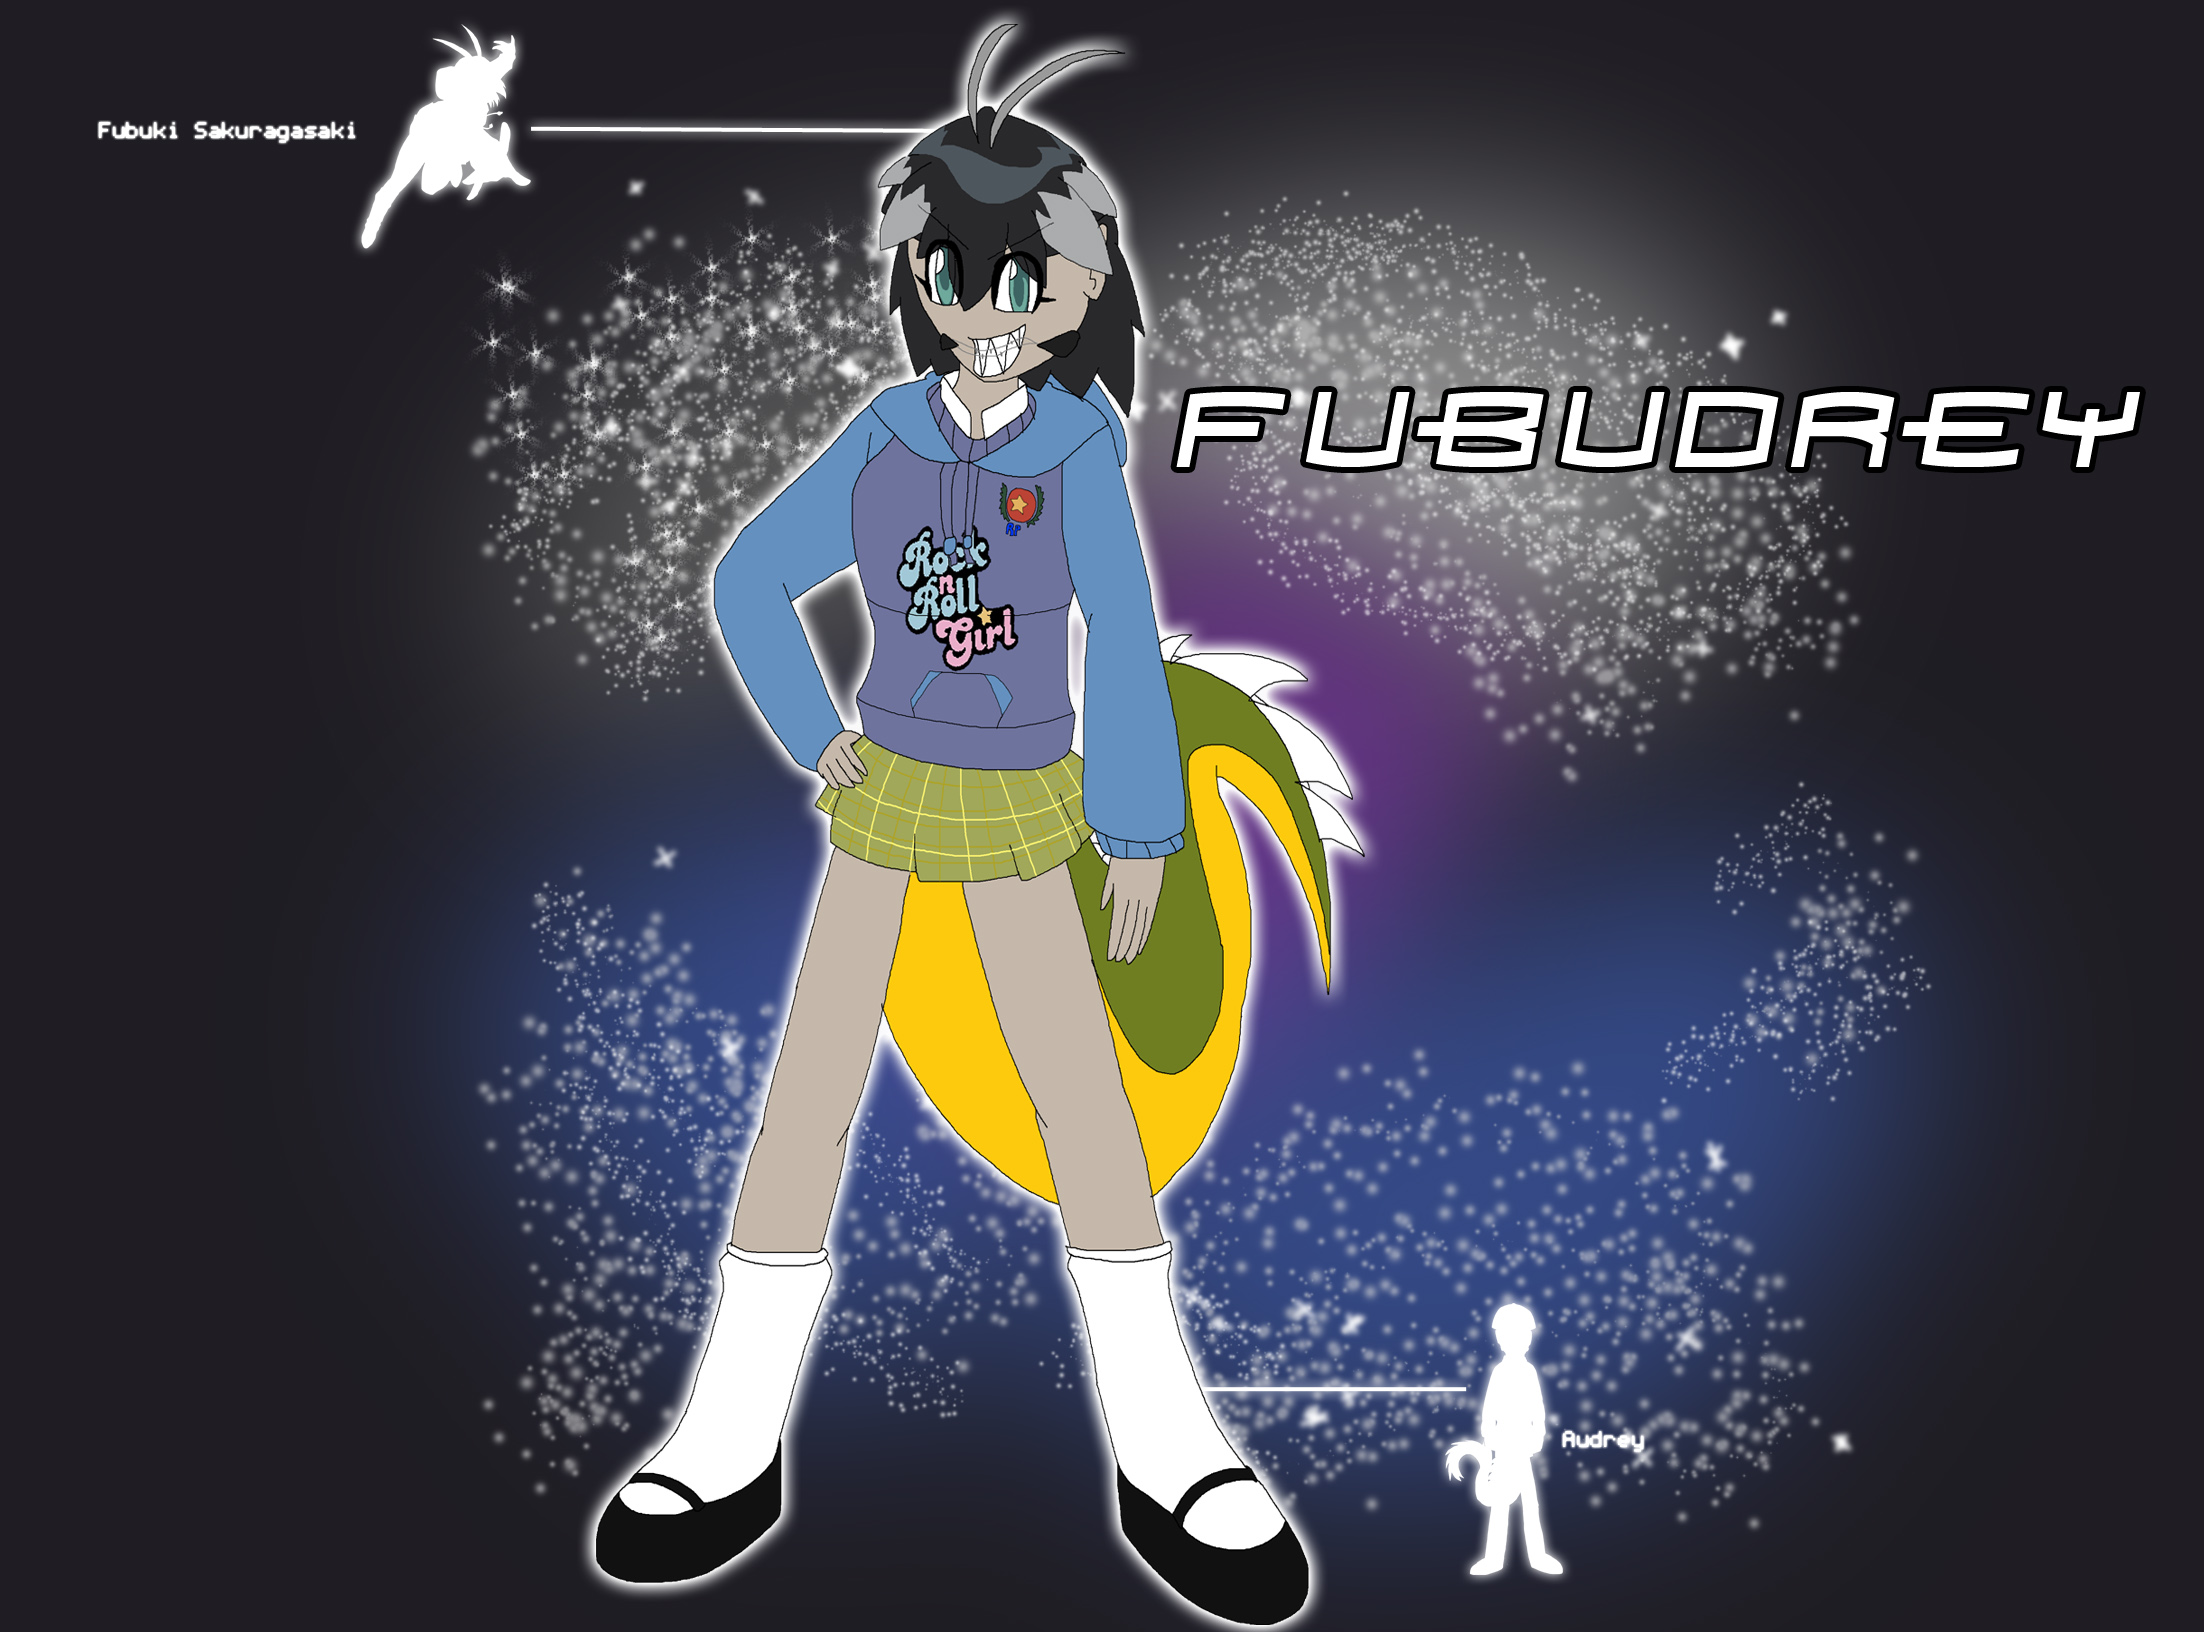 Fusion - Fubudrey by Rainbow-Dash-Rockz